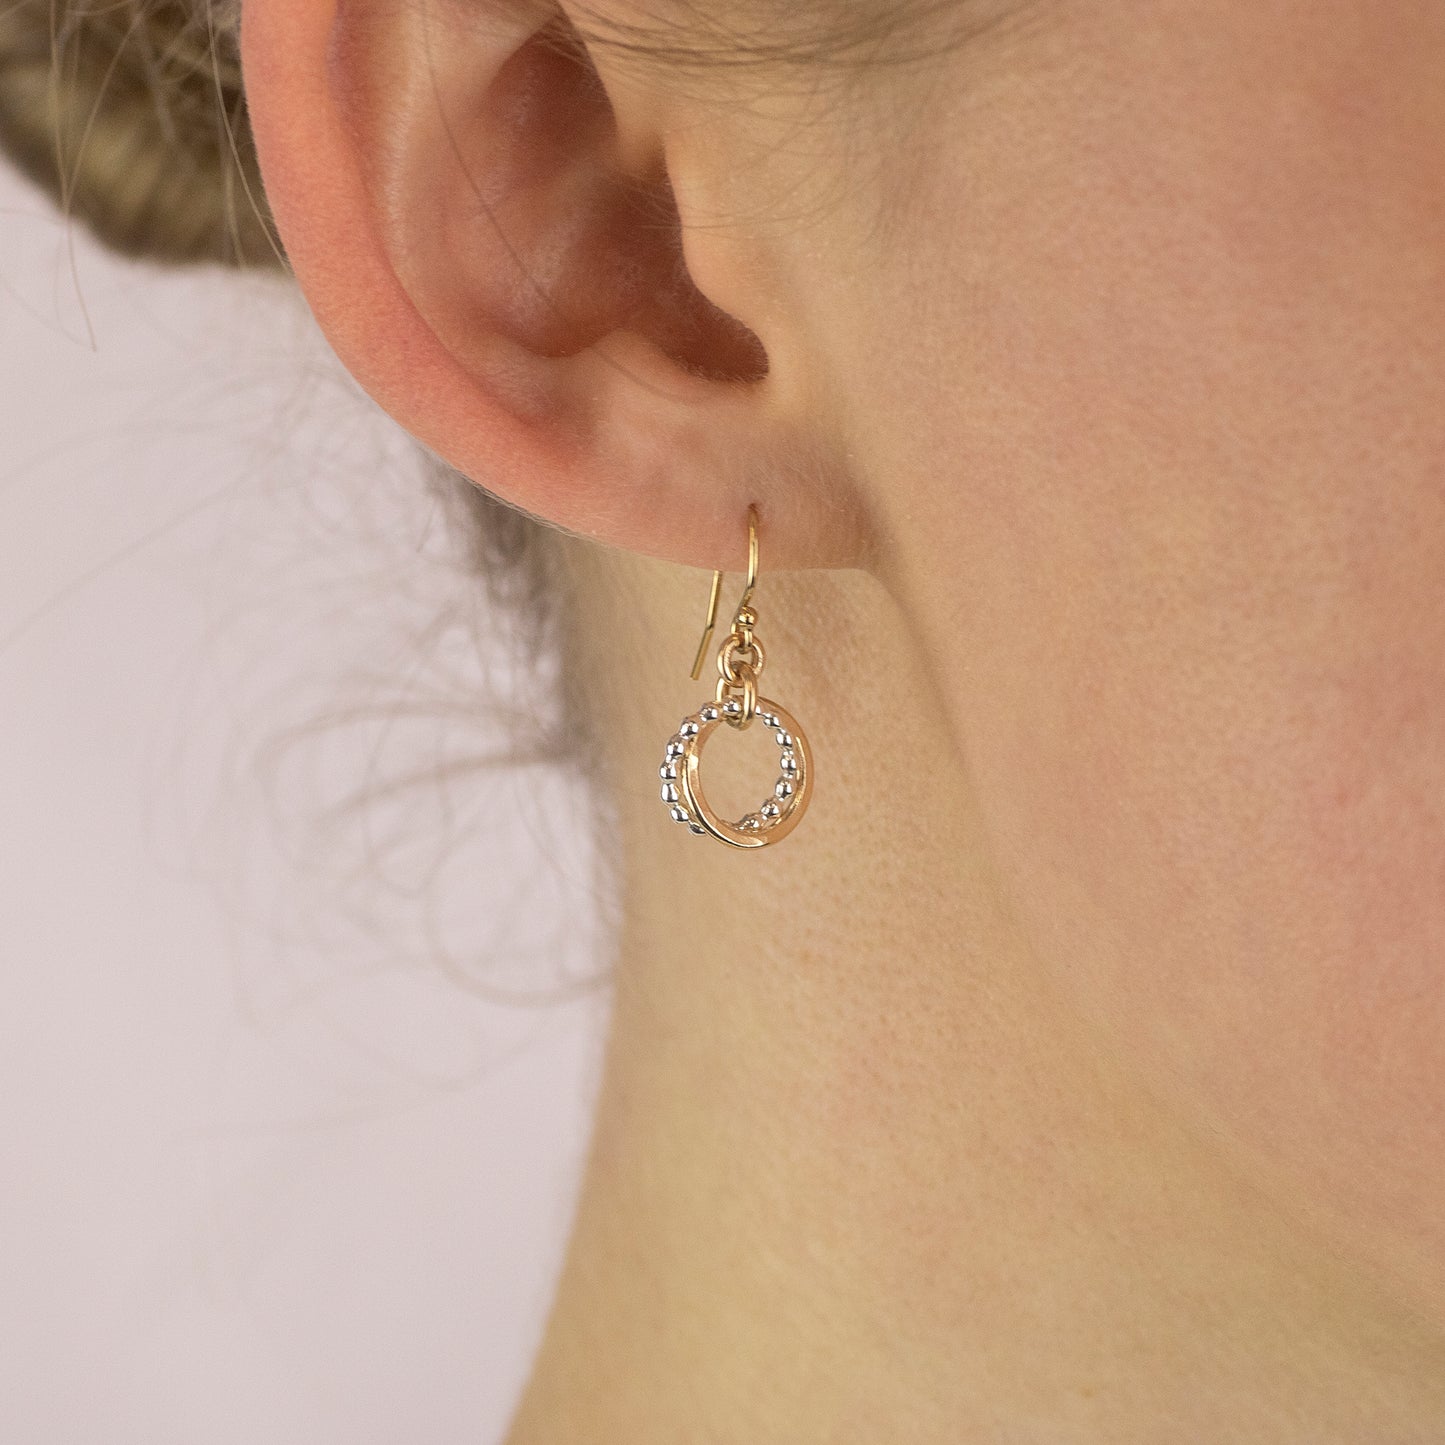 Friendship Earrings - 3 Friends Linked for a Lifetime - Silver Love Knot Earrings